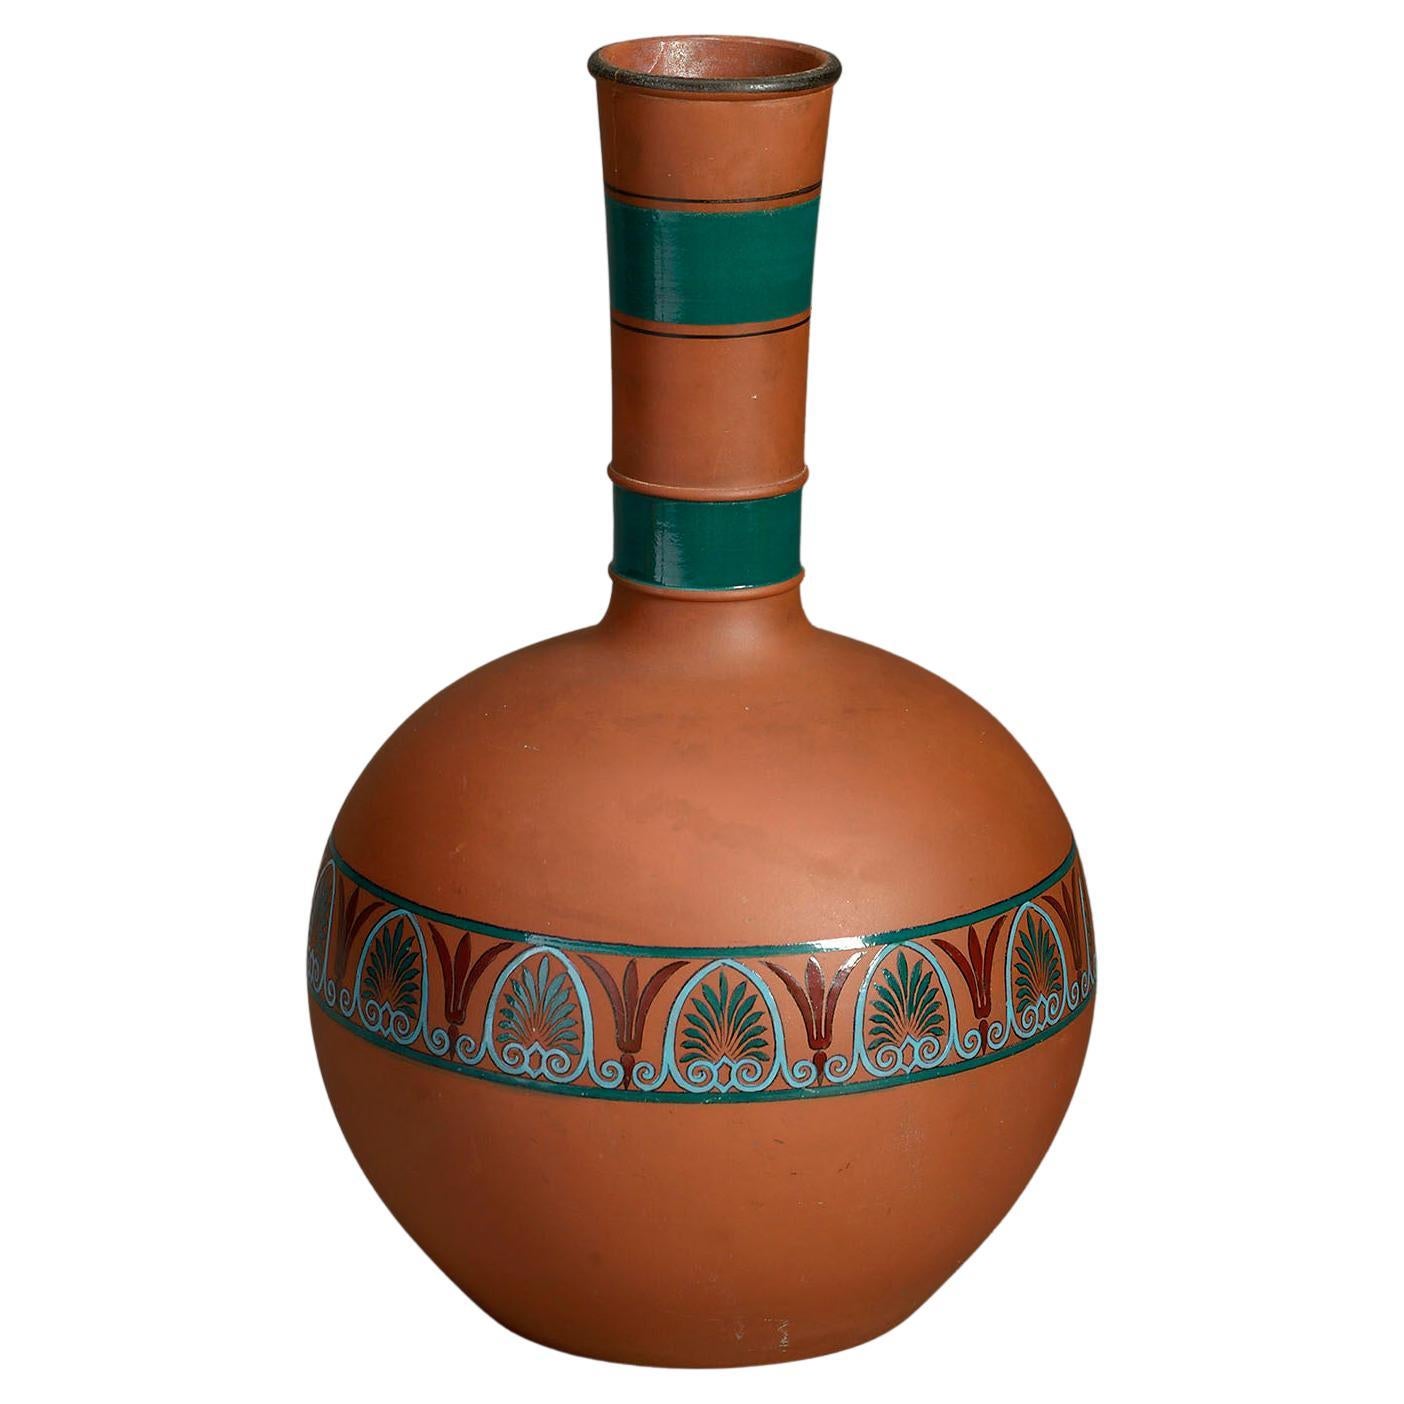 20th Century Terracotta Bottle Vase in the Classical Taste